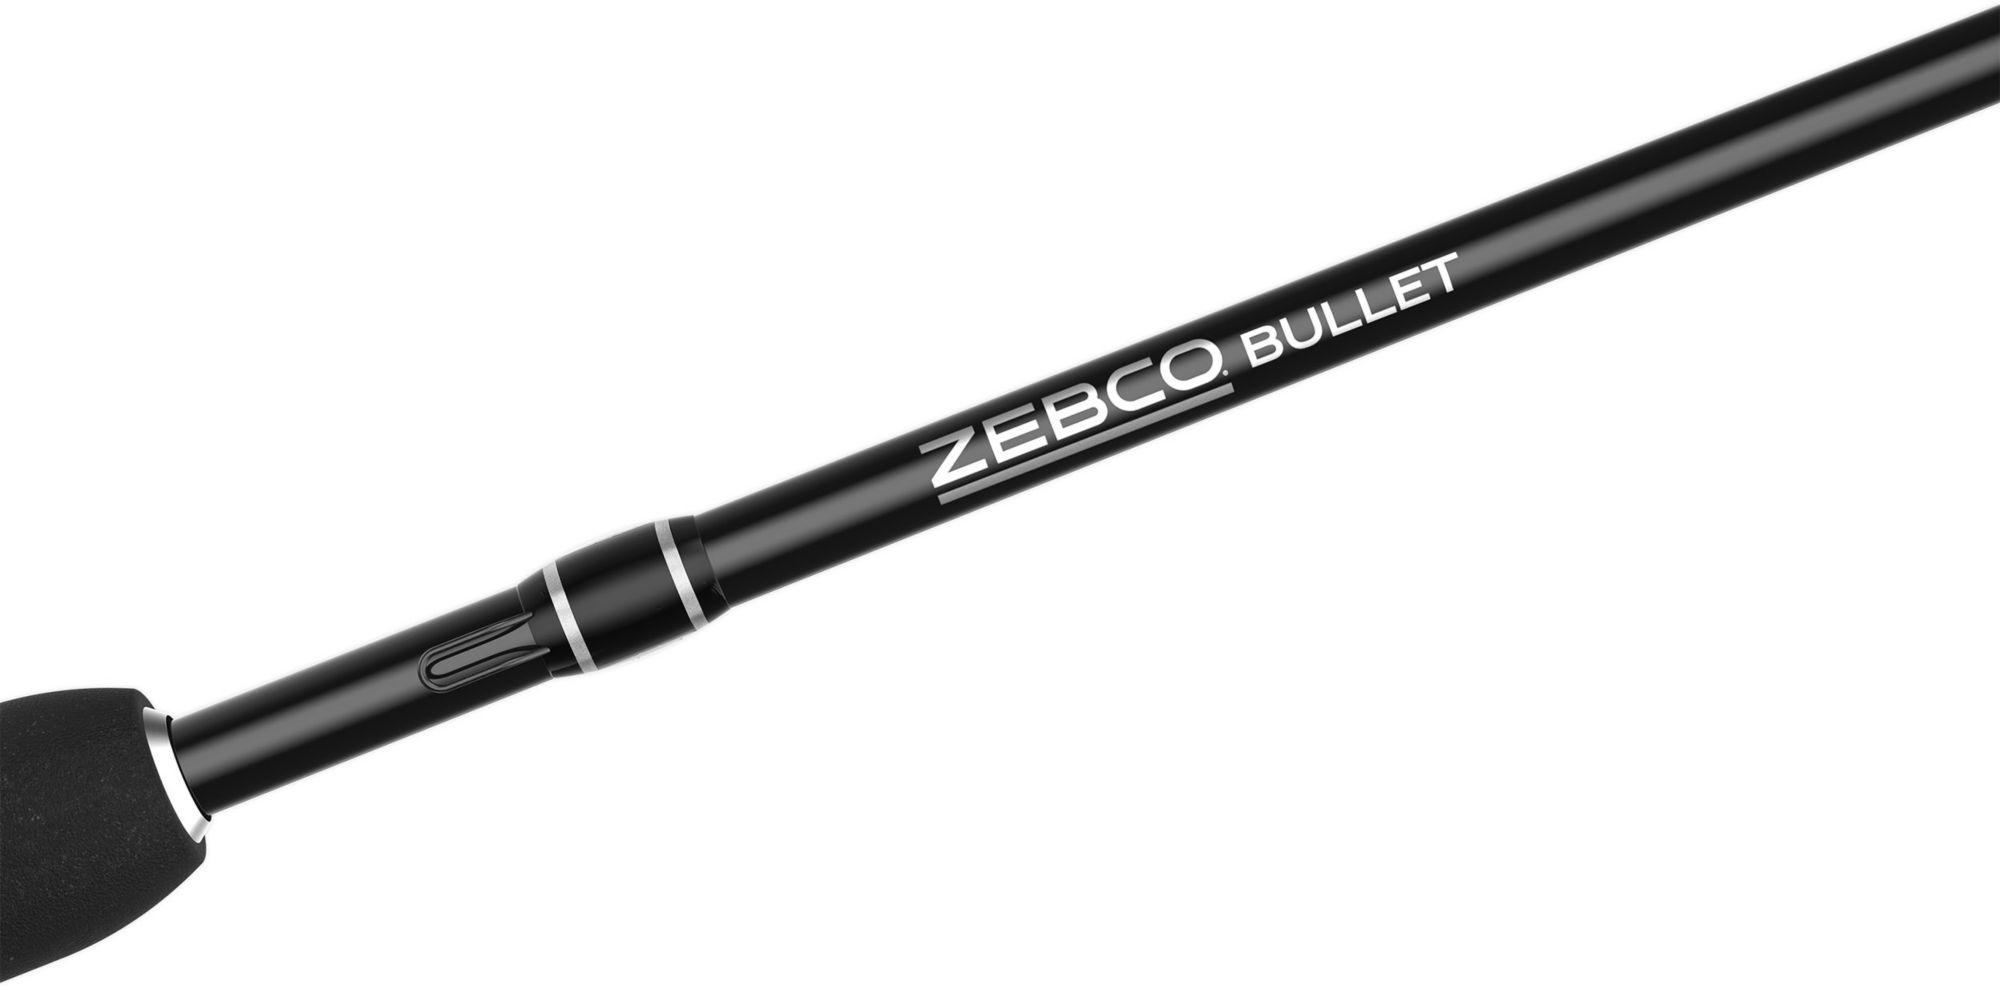 Dick's Sporting Goods Zebco Bullet 30SZ Spincast Combo